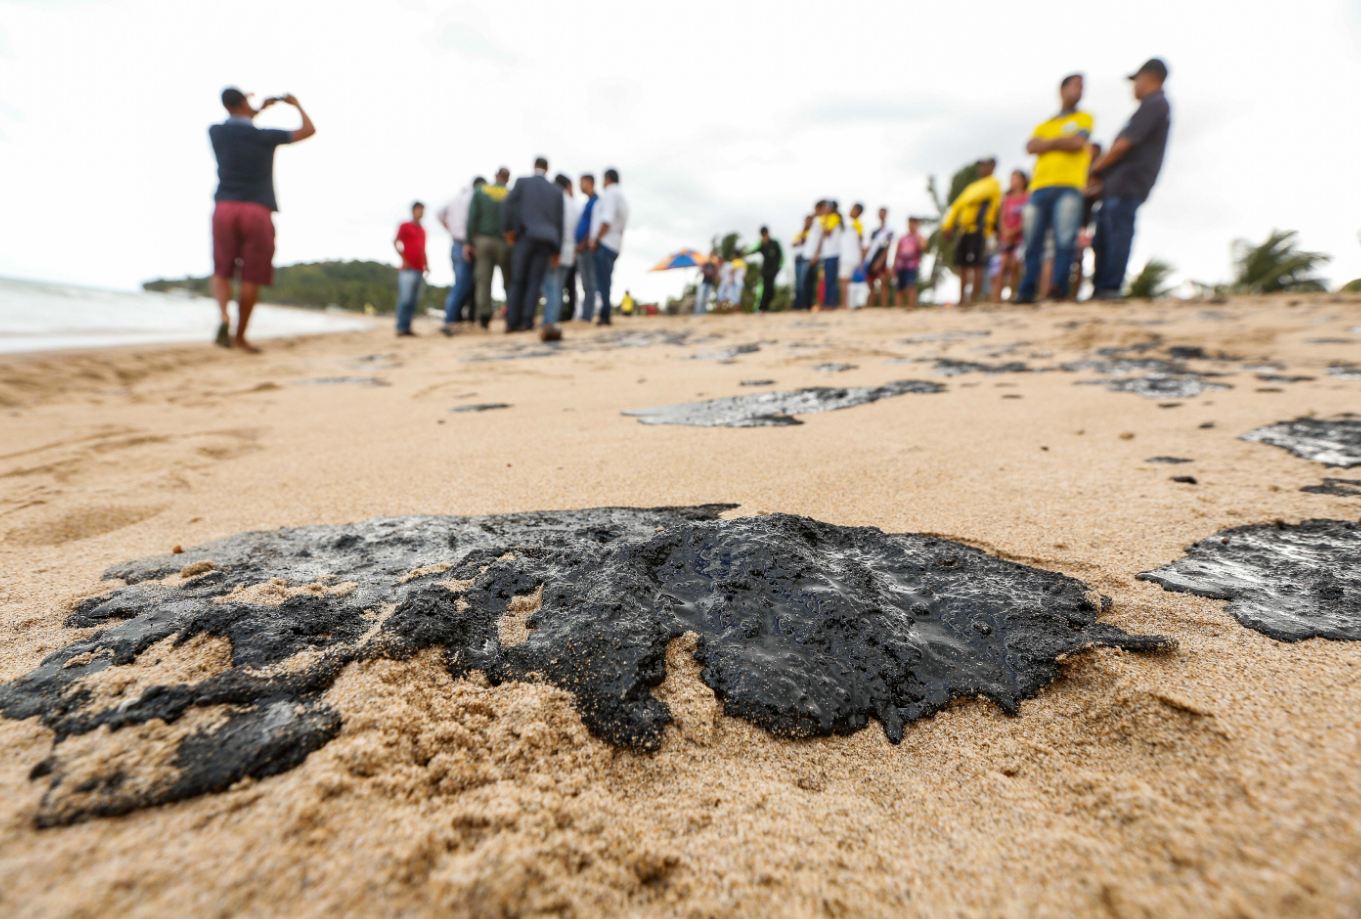 Ações para retirada de óleo na Costa dos Corais são intensificadas